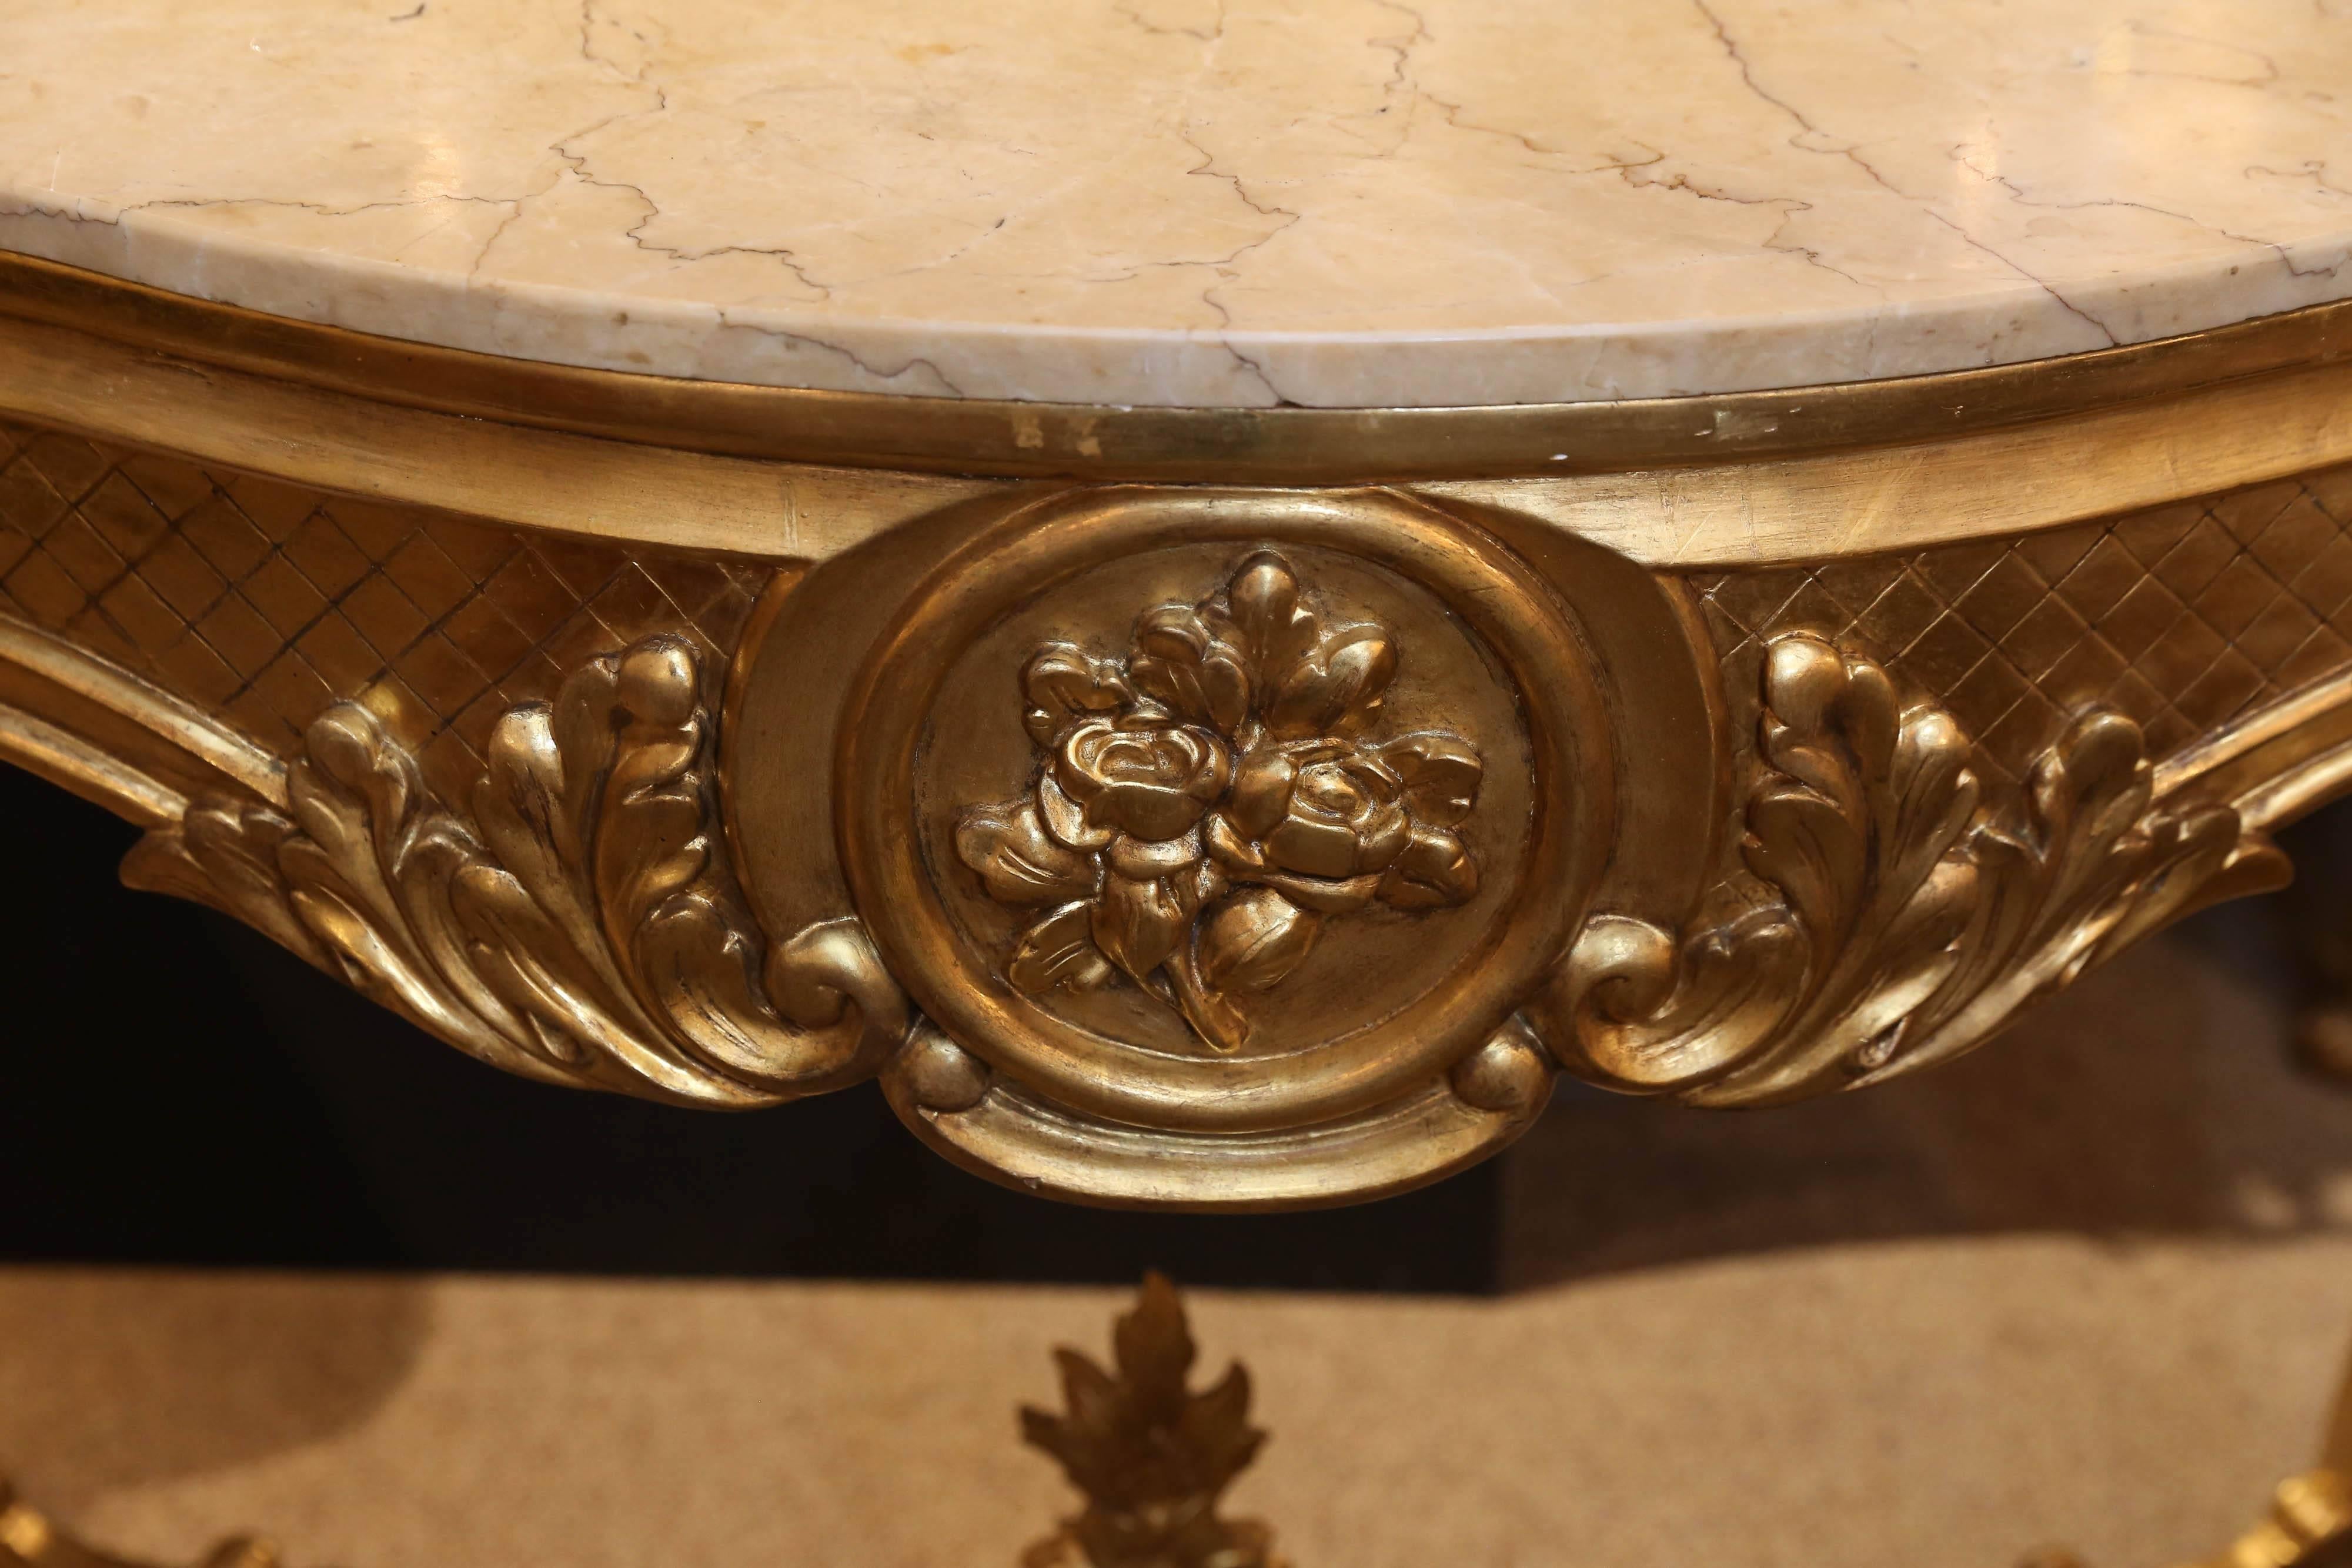 vergoldete französische Konsole im Stil Louis XV, mit cremefarbener Marmorplatte
Eine X-förmige Streckbank verbindet die Beine am unteren Ende dieses 
Stück und ein floral geschnitzter Abschluss schmückt die Mitte
Das florale Motiv ist in